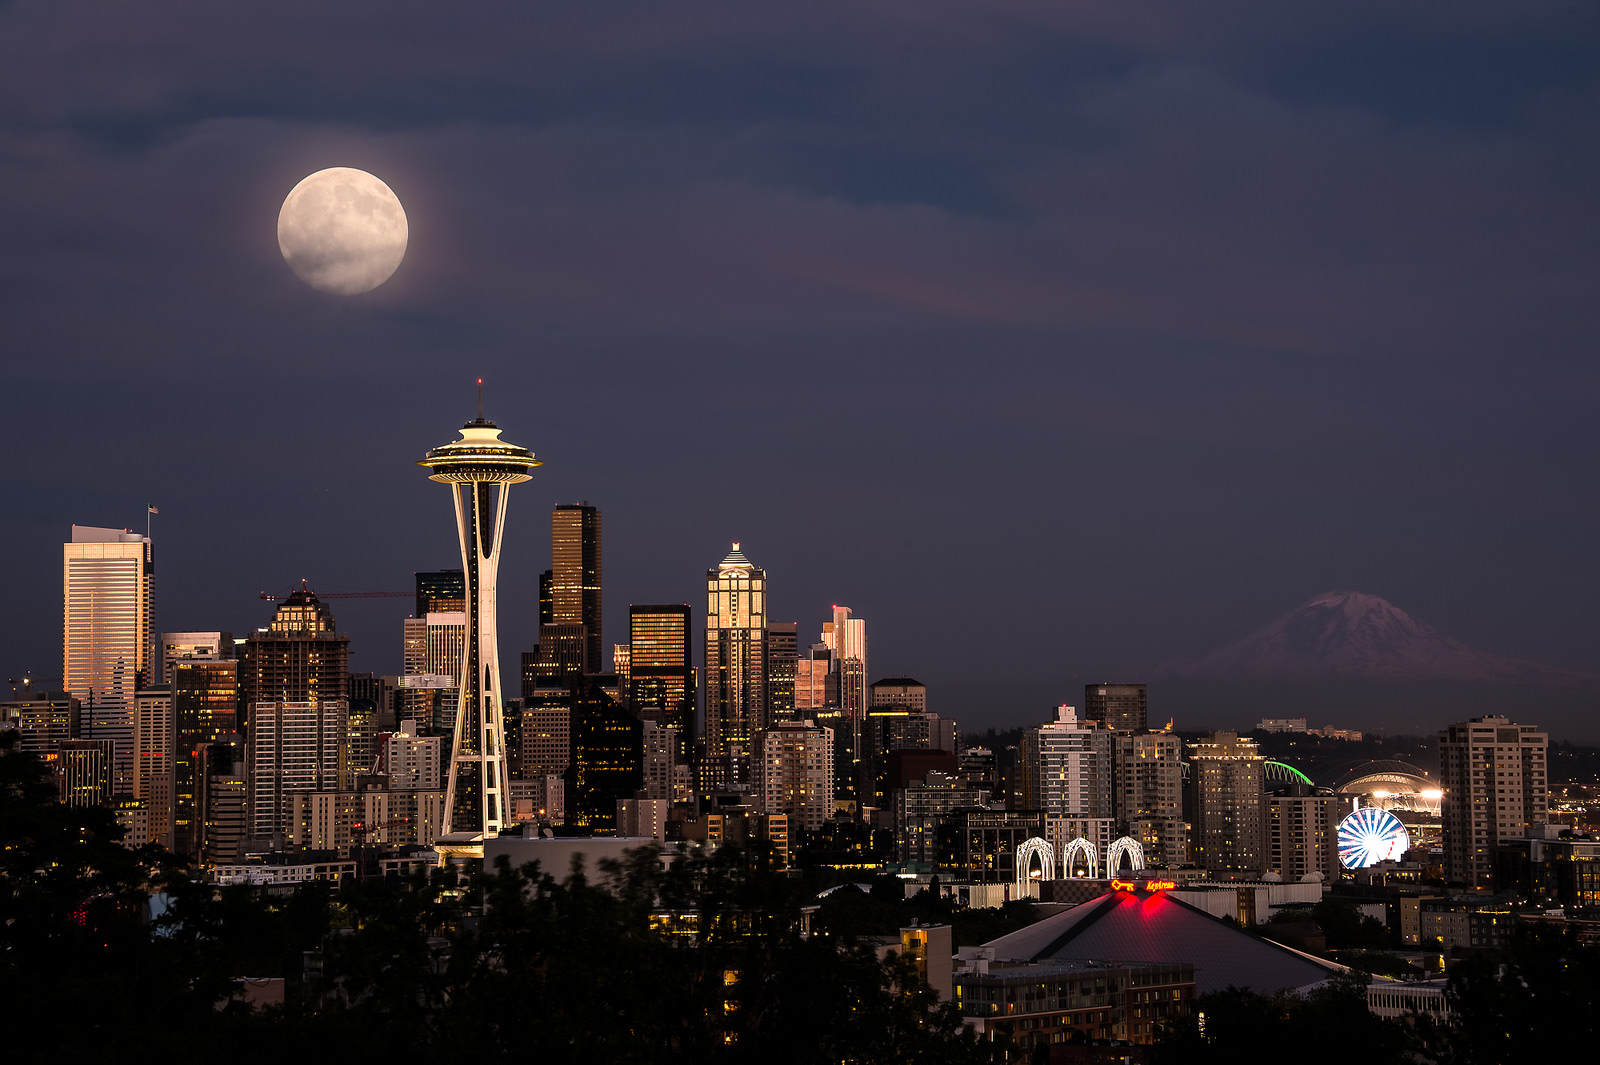 Kerry Park, Seattle skyline, night, moon